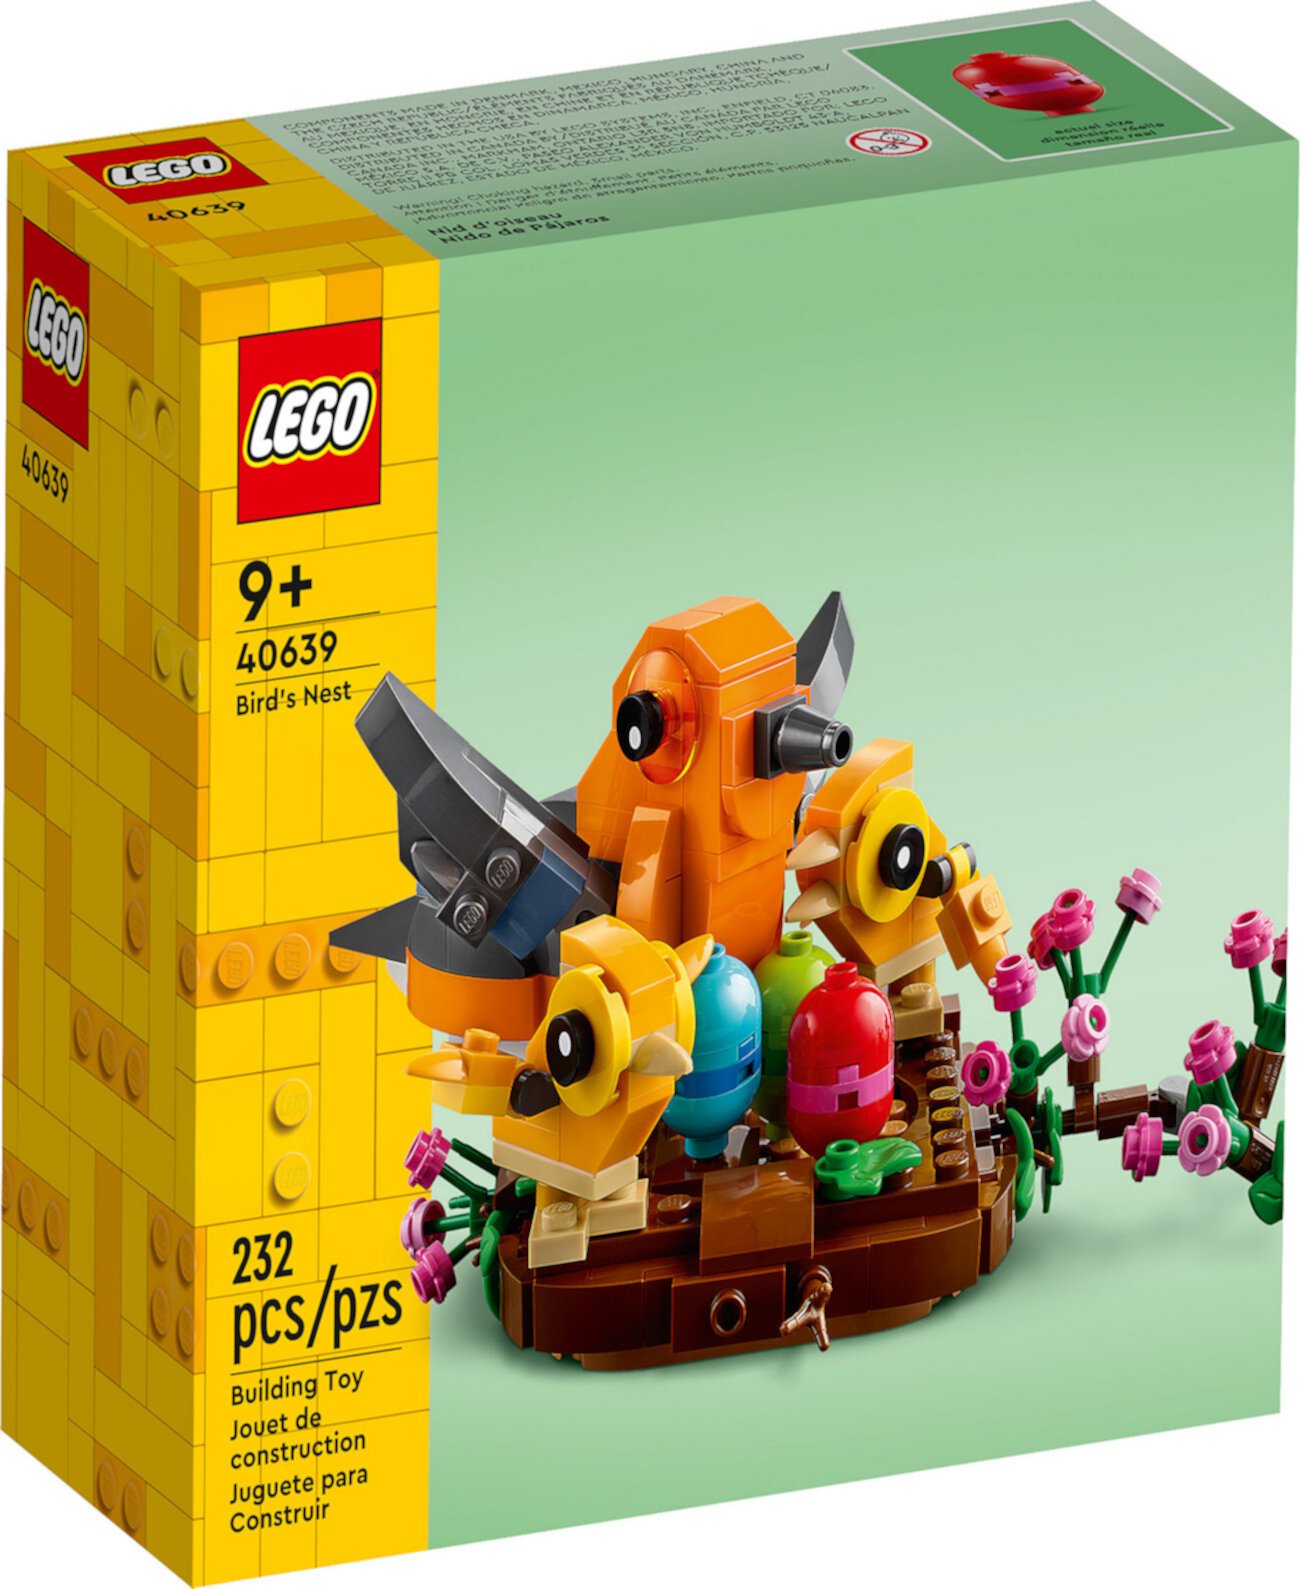 Знаменитое птичье гнездо 40639, 232 детали Lego